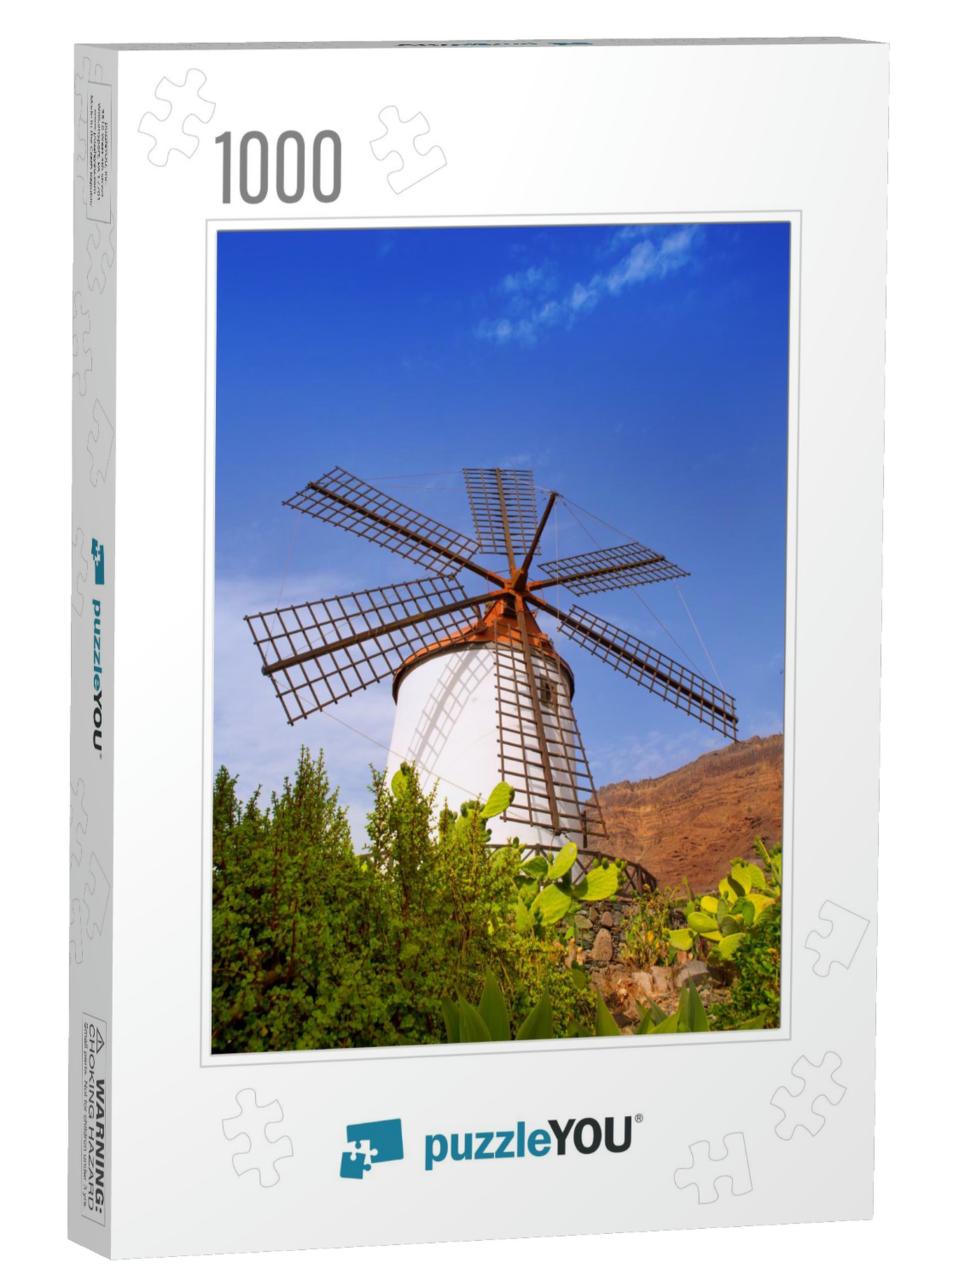 El Molino De Mogan Historical Windmill in Gran Canaria [P... Jigsaw Puzzle with 1000 pieces